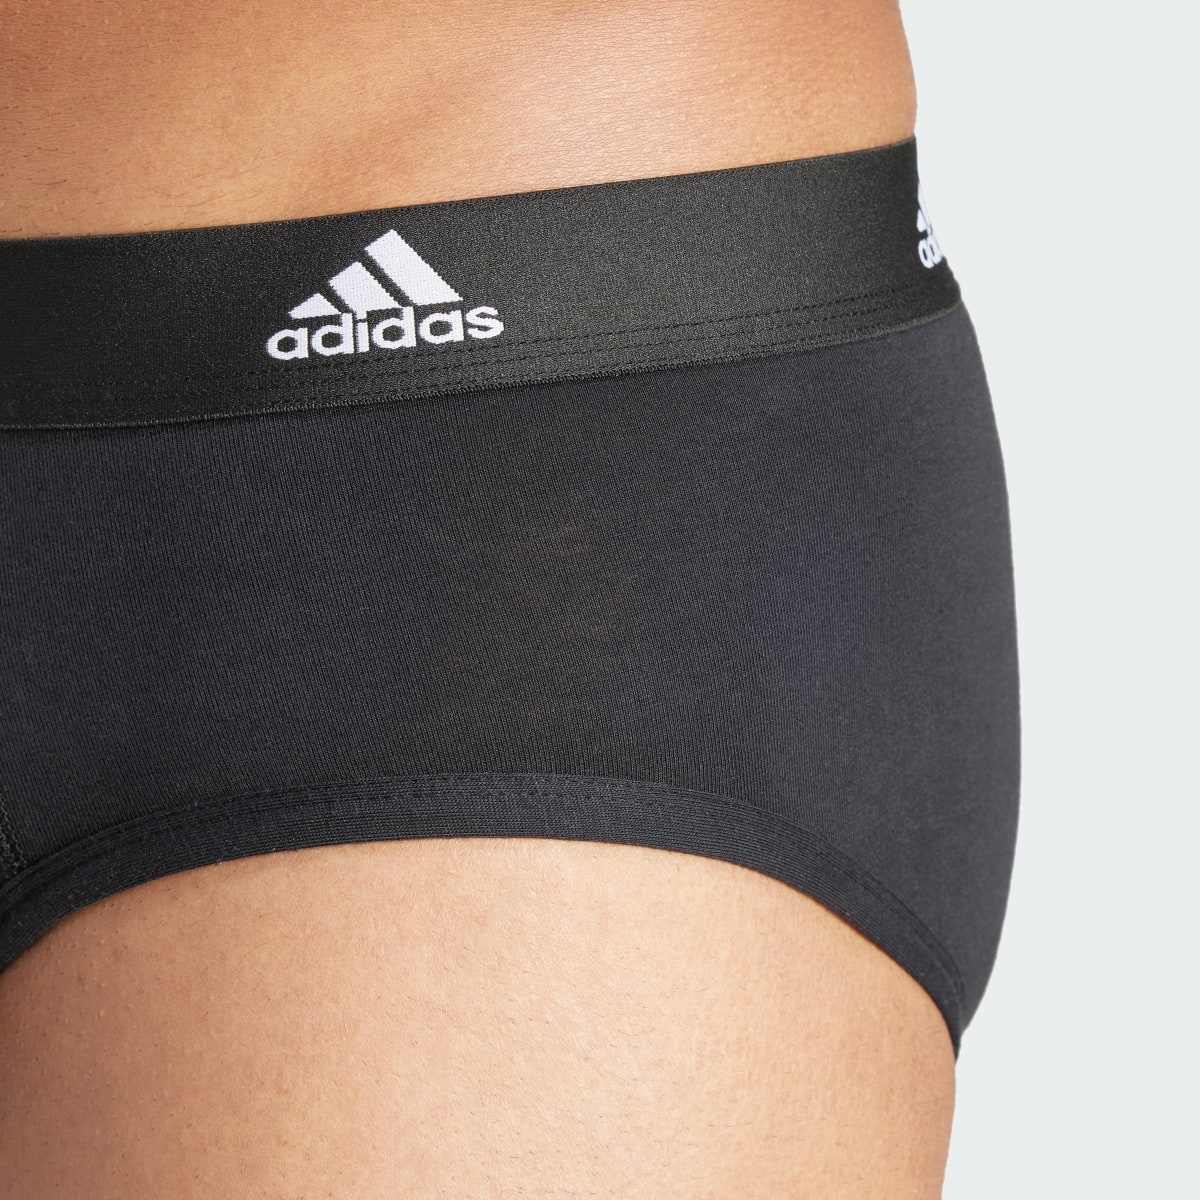 Adidas Active Flex Cotton Slips, 3er-Pack – Unterwäsche. 8